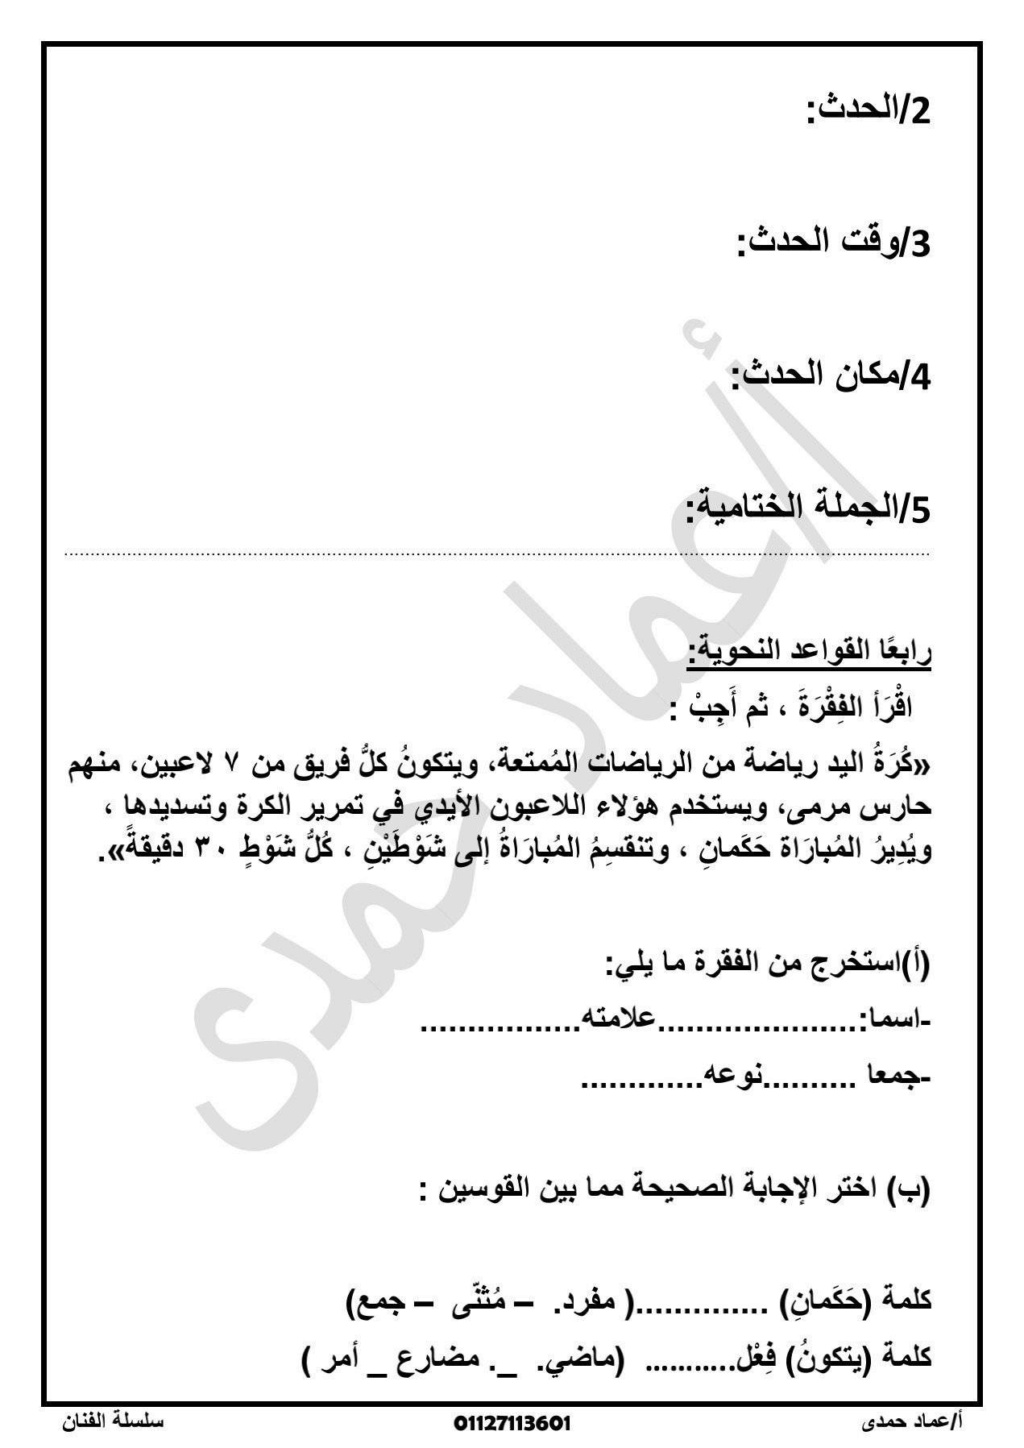 امتحان لغة عربية للصف الرابع الابتدائي علي مقرر شهر أكتوبر  أ. عماد حمدي 6210